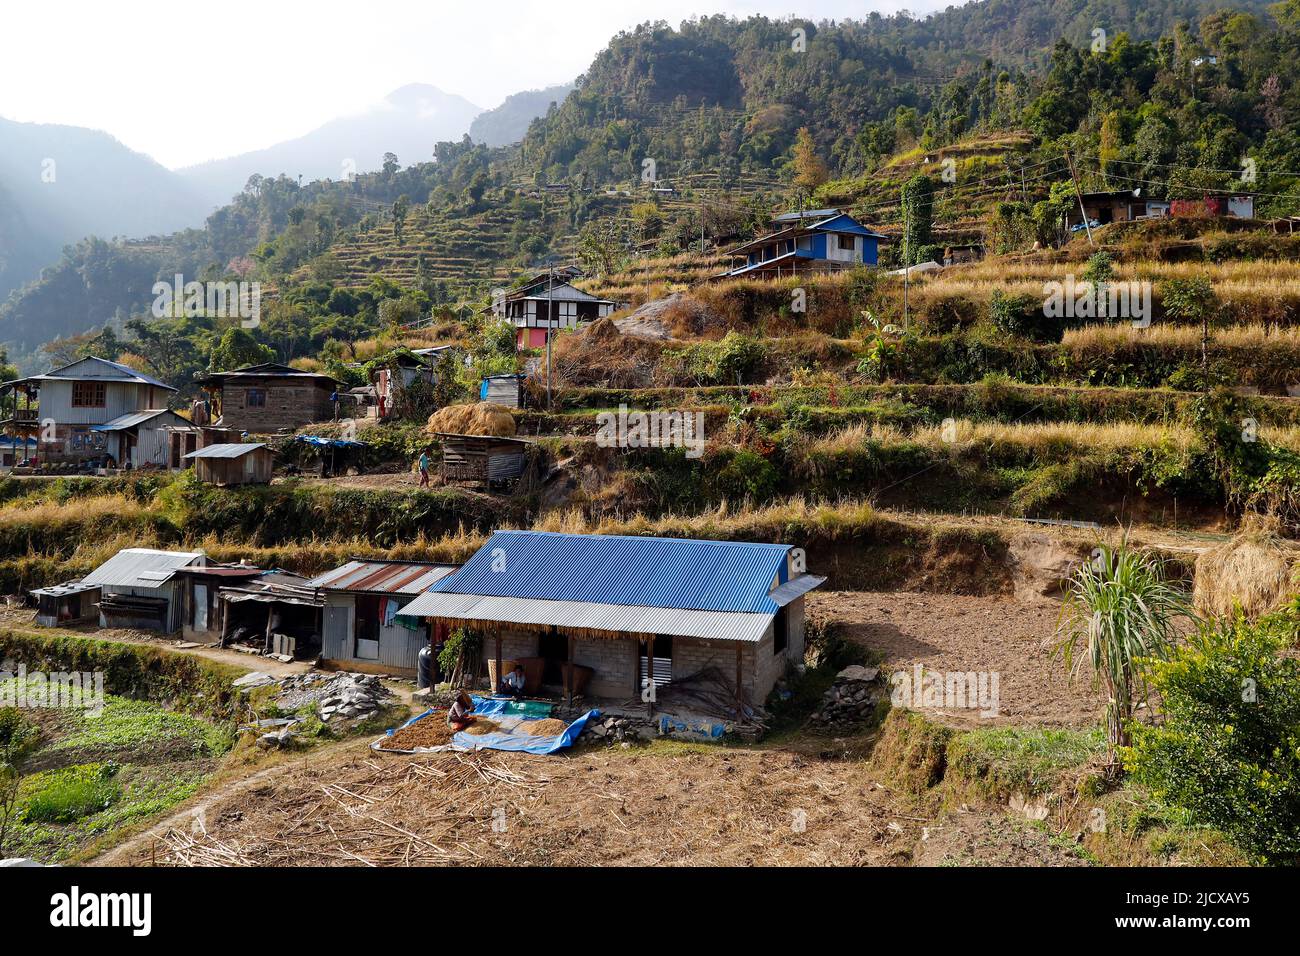 Village montagneux et agriculture traditionnelle, Lapilang, Dolakha, Népal, Asie Banque D'Images